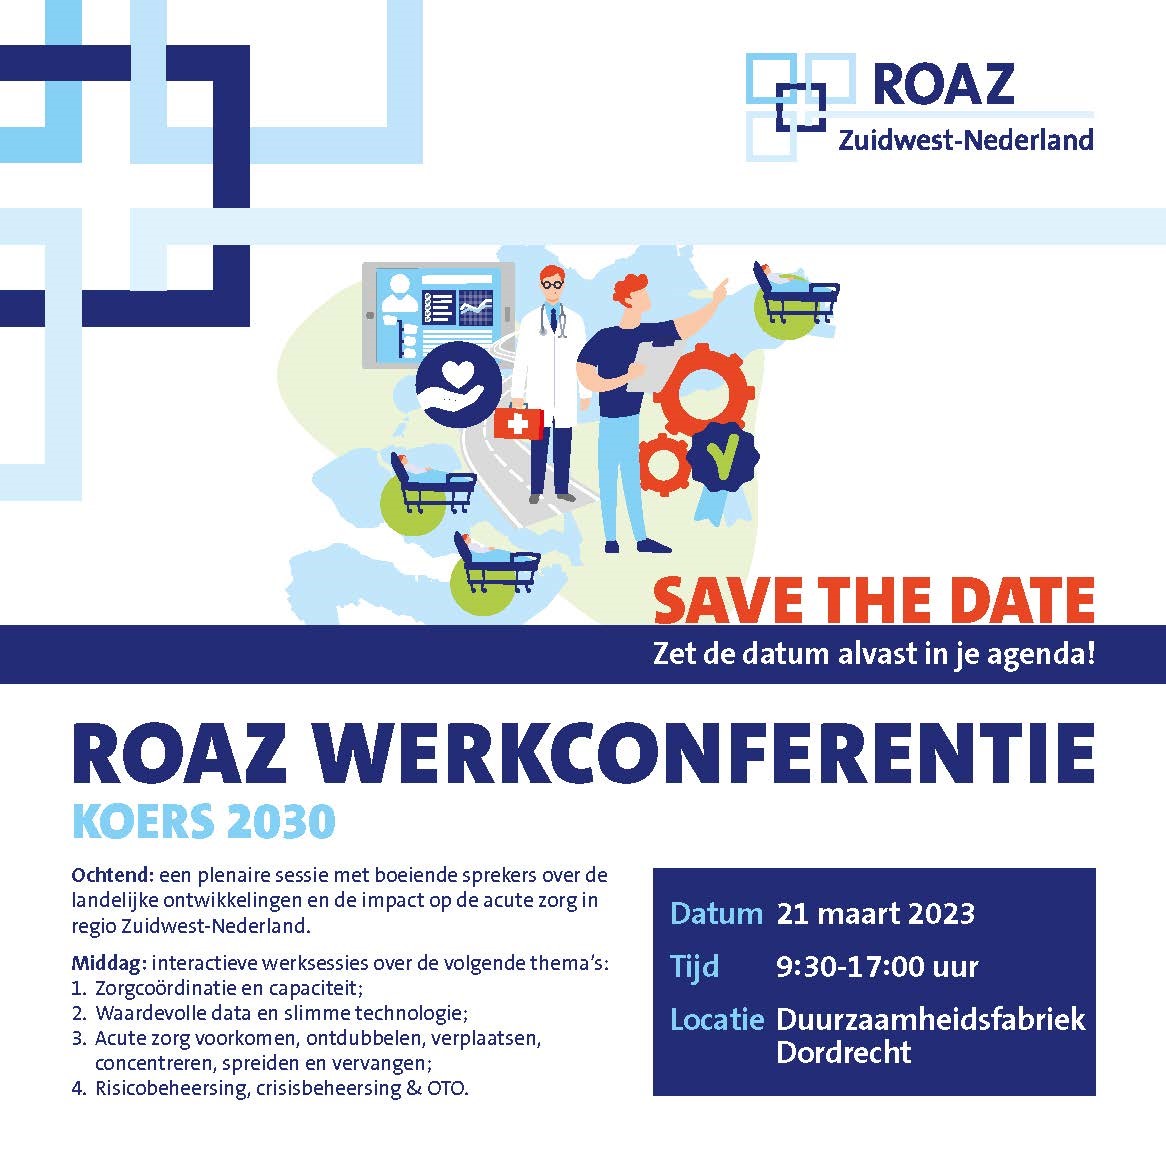 Save the date: 21 maart 2023 ROAZ Werkconferentie KOERS 2030 - inschrijving nu geopend